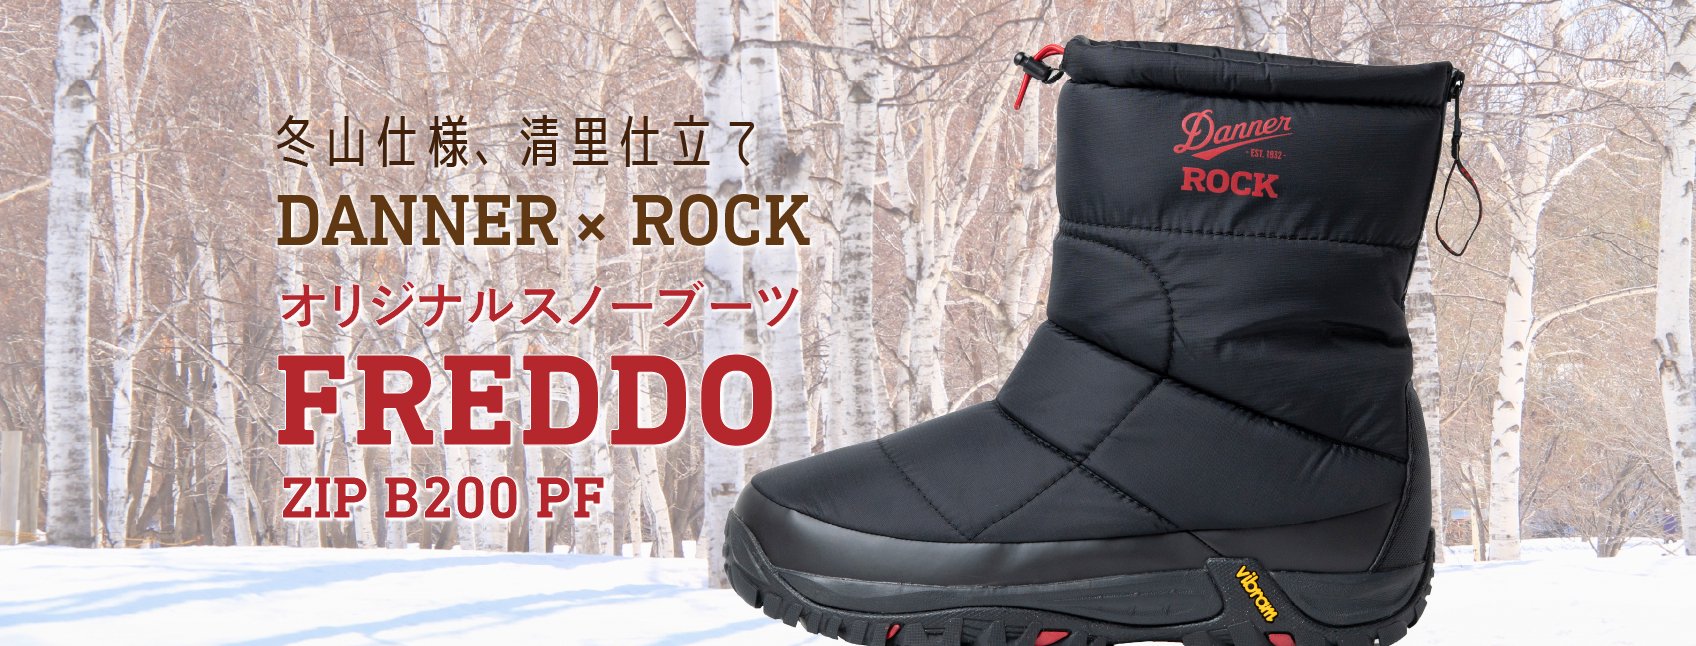 萌木の村ROCK×DANNER オリジナルスノーブーツ「FREDDO ZIP B200 PF」